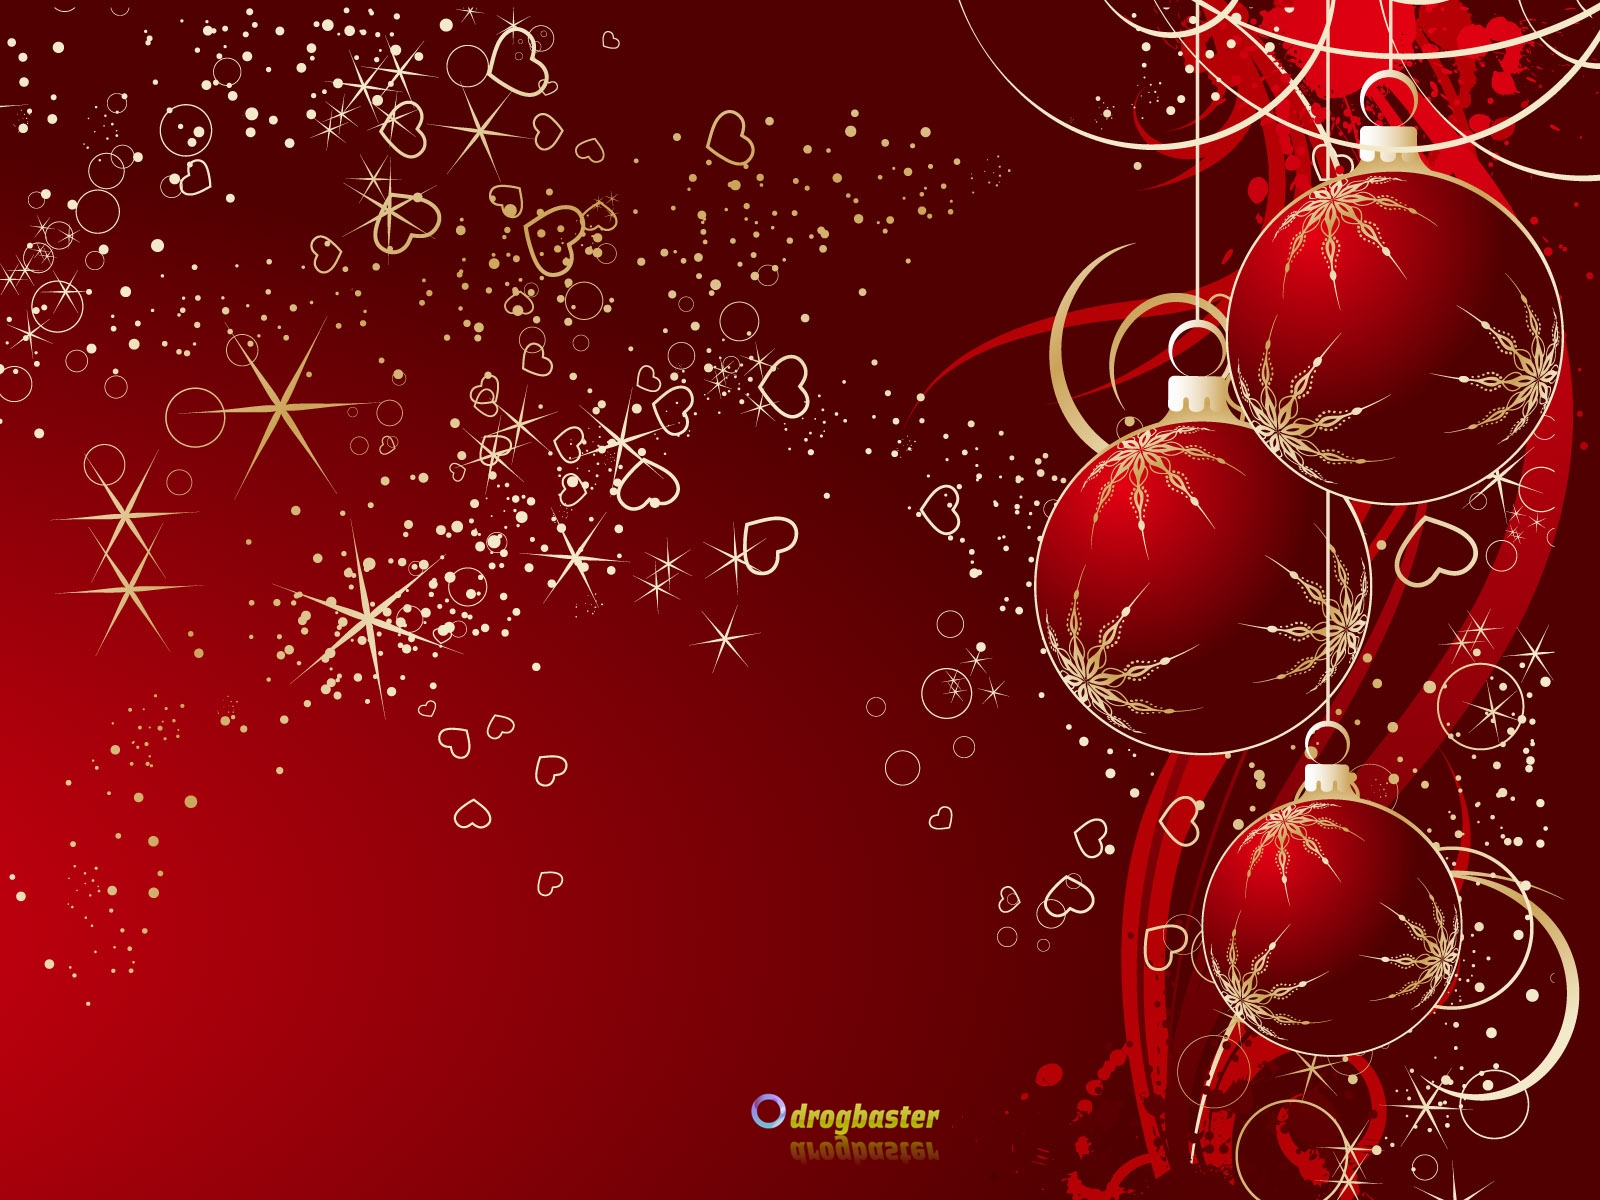 Sfondi Natalizi X Cellulare.Sfondi Immagini E Decori Di Natale Grafica Per Cellulare Android